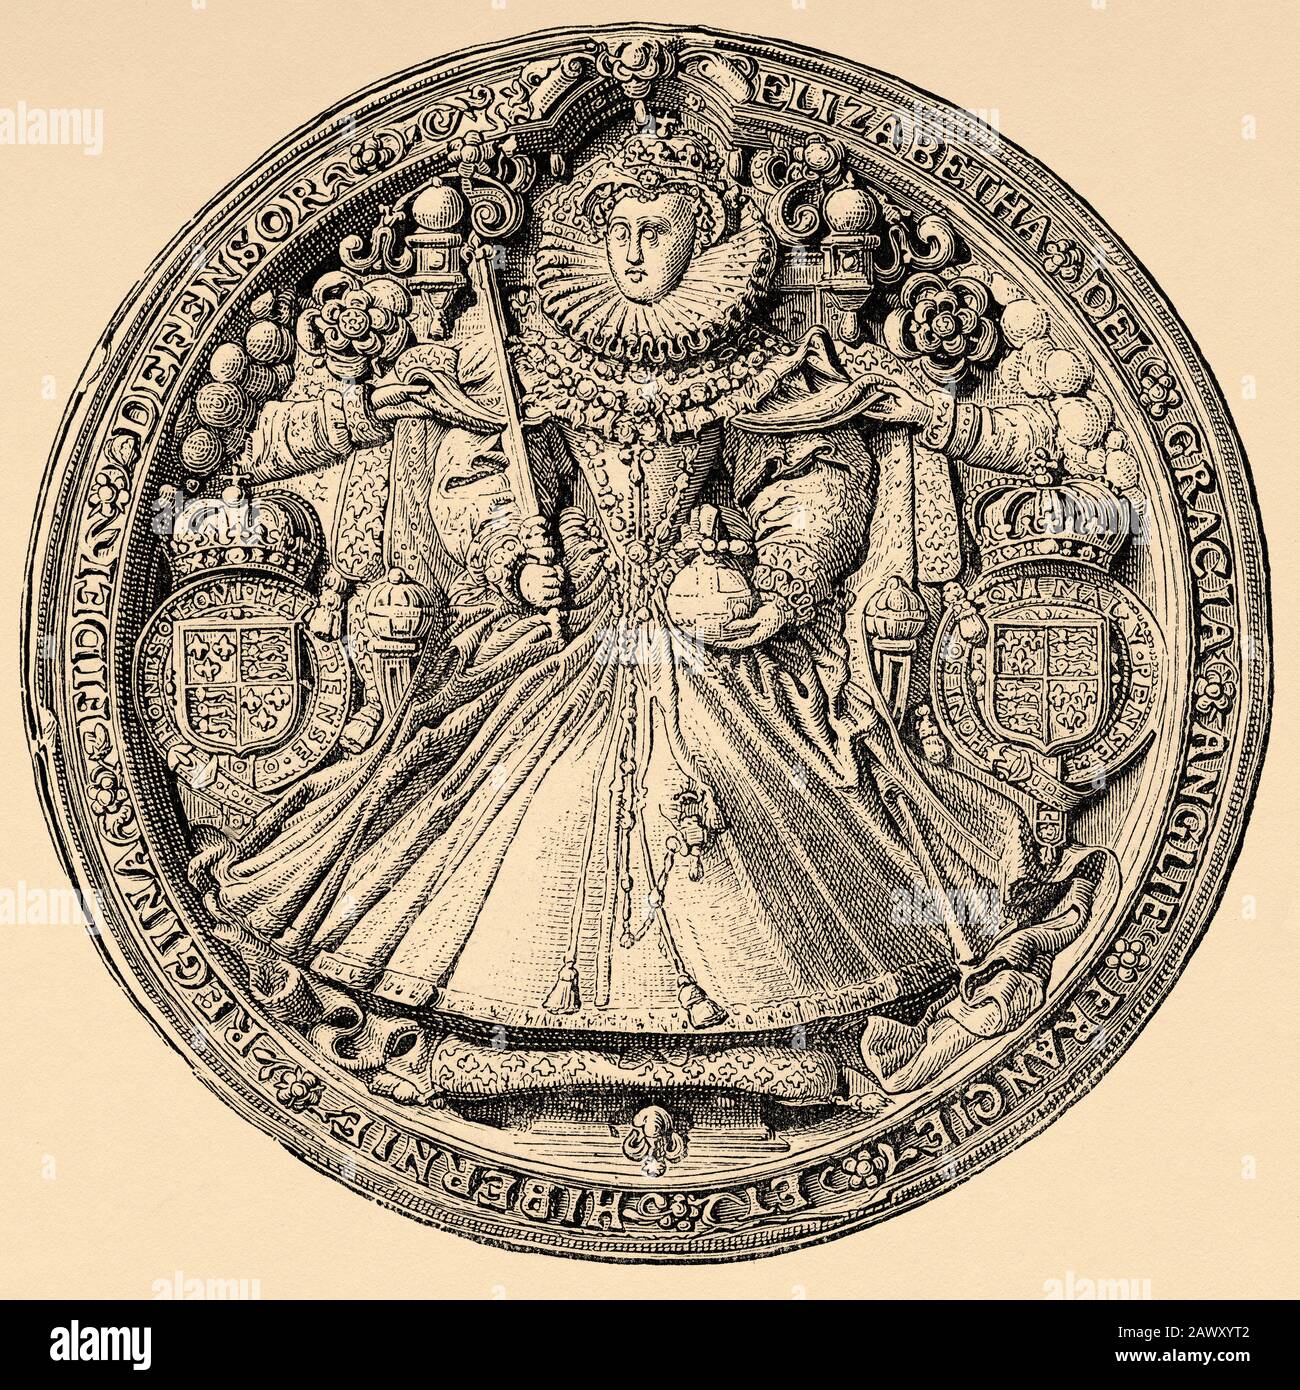 Portrait-Medaille von Elizabeth I. von England. The Virgin Queen, Gloriana oder The Good Queen Bess (Greenwich, 7. September 1533 - Richmond, 24. März 1603). Stockfoto